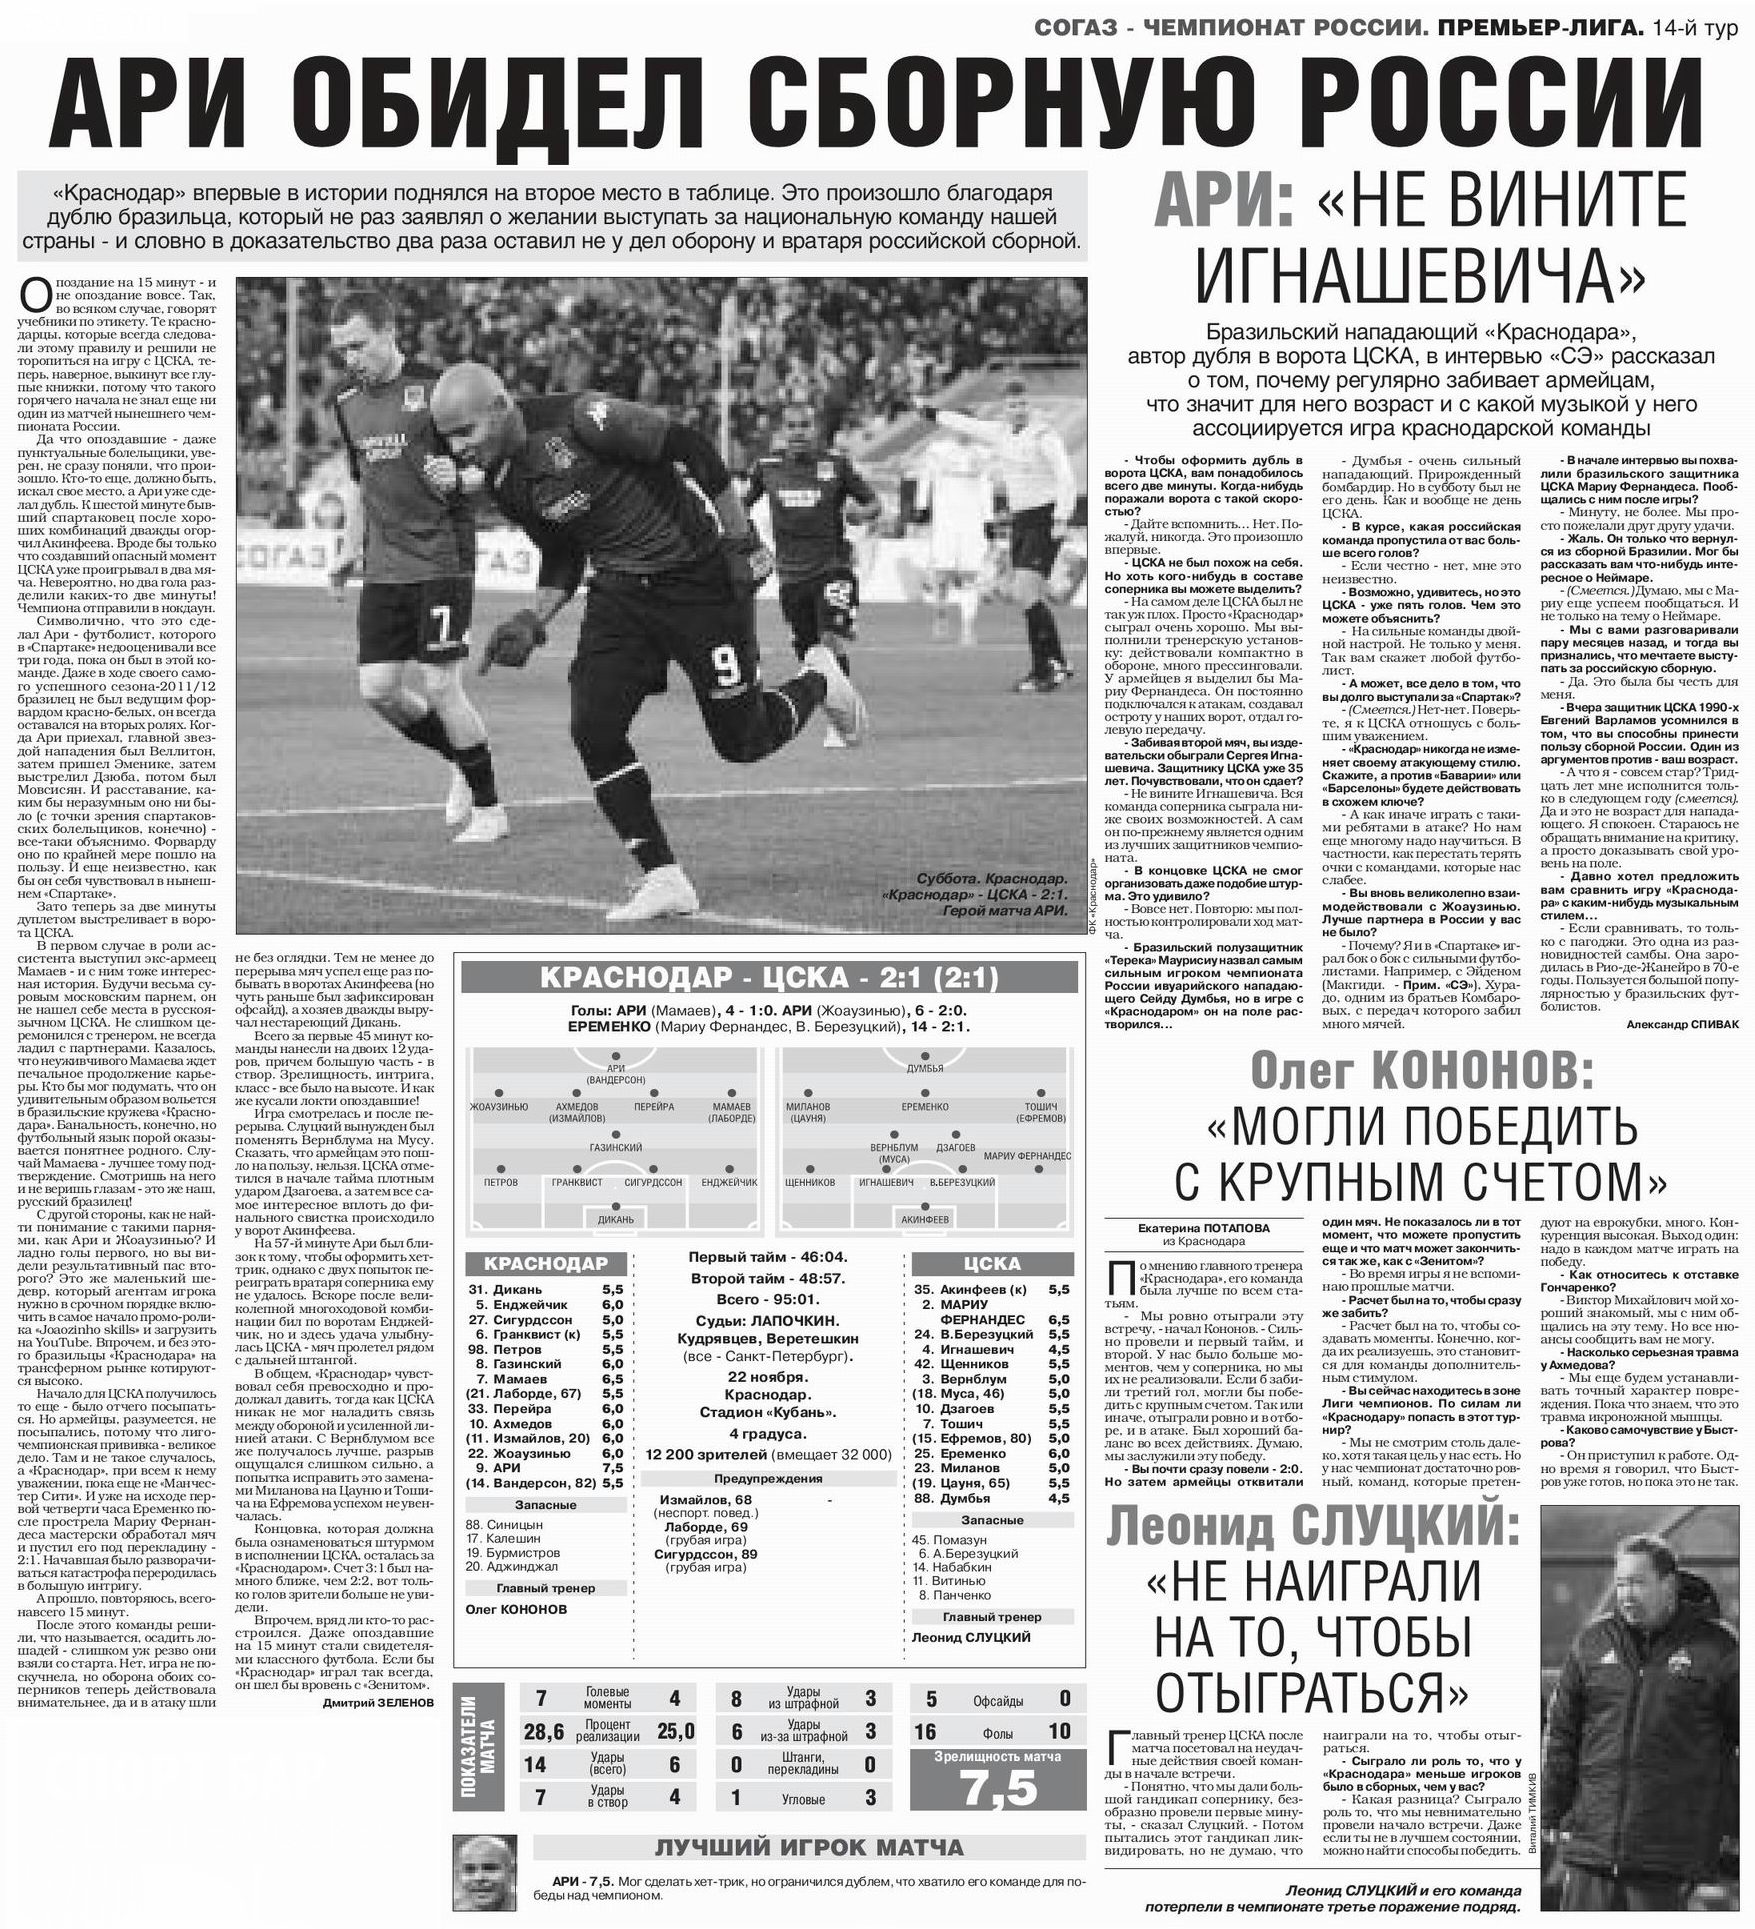 2014-11-22.Krasnodar-CSKA